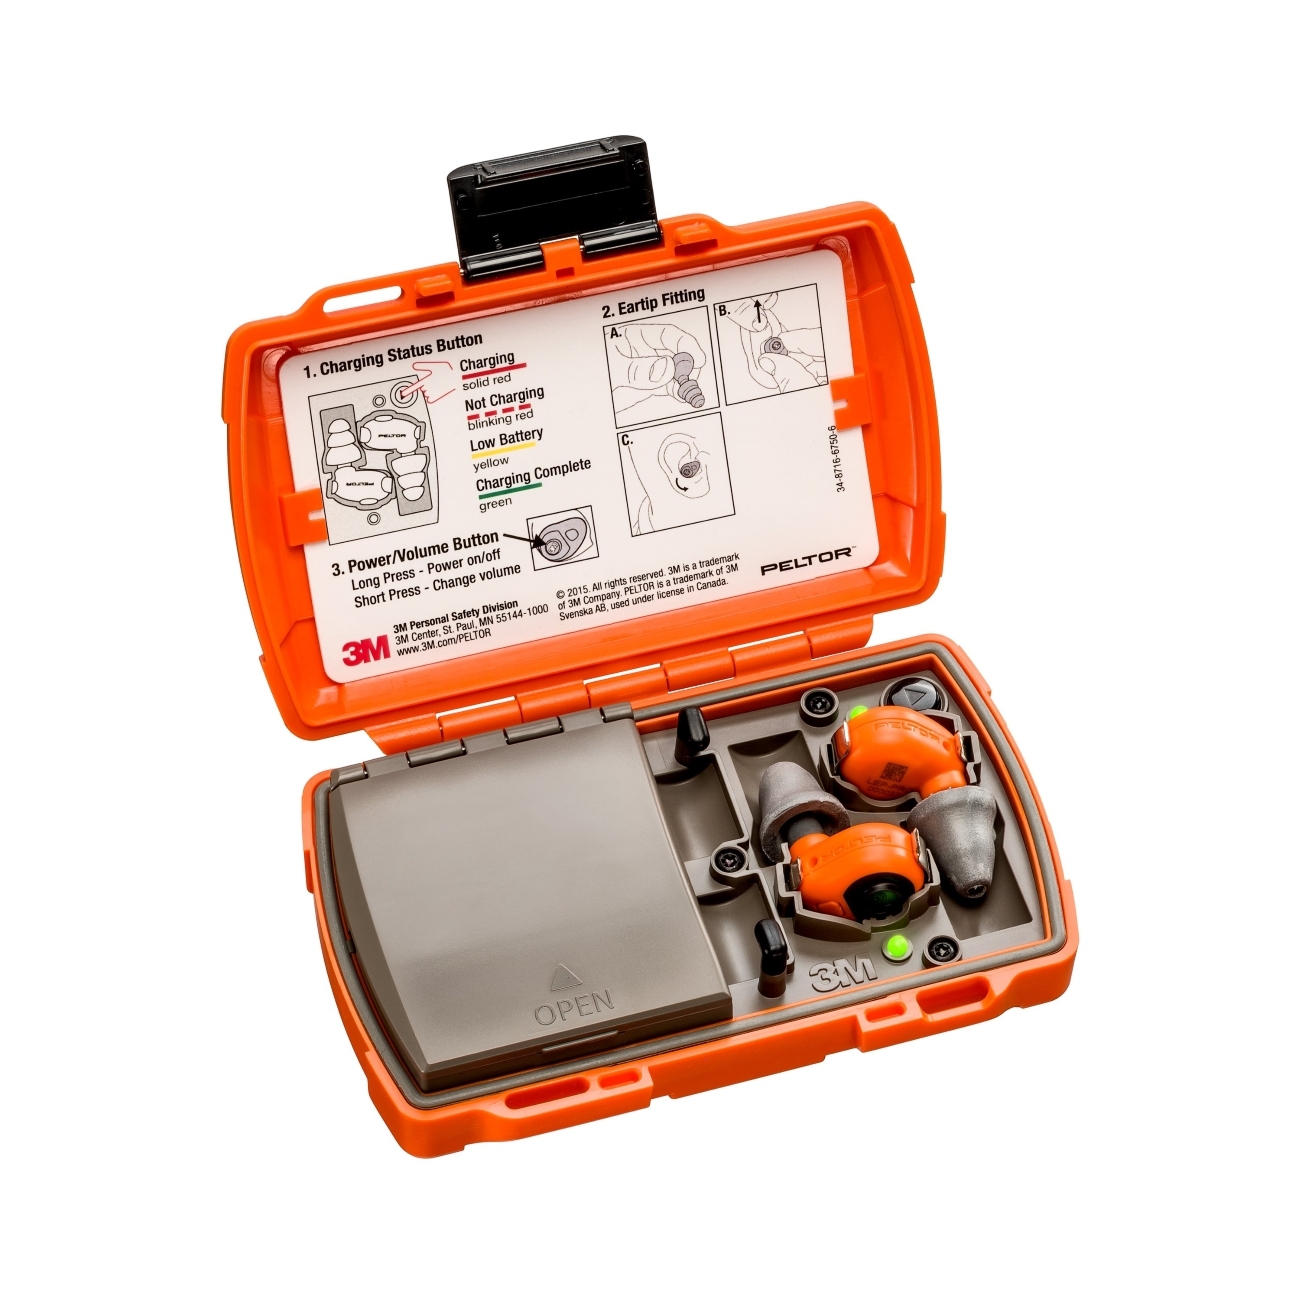  3M PELTOR LEP-200 EU oranje met extra antenne voor draadloze ontvangst van audiosignalen, set: oordopjes en oplaadstation (met gesloten deksel en USB-poorten) zijn IP-54 en waterdicht (30 min. onderdompeling tot 1 m diepte)